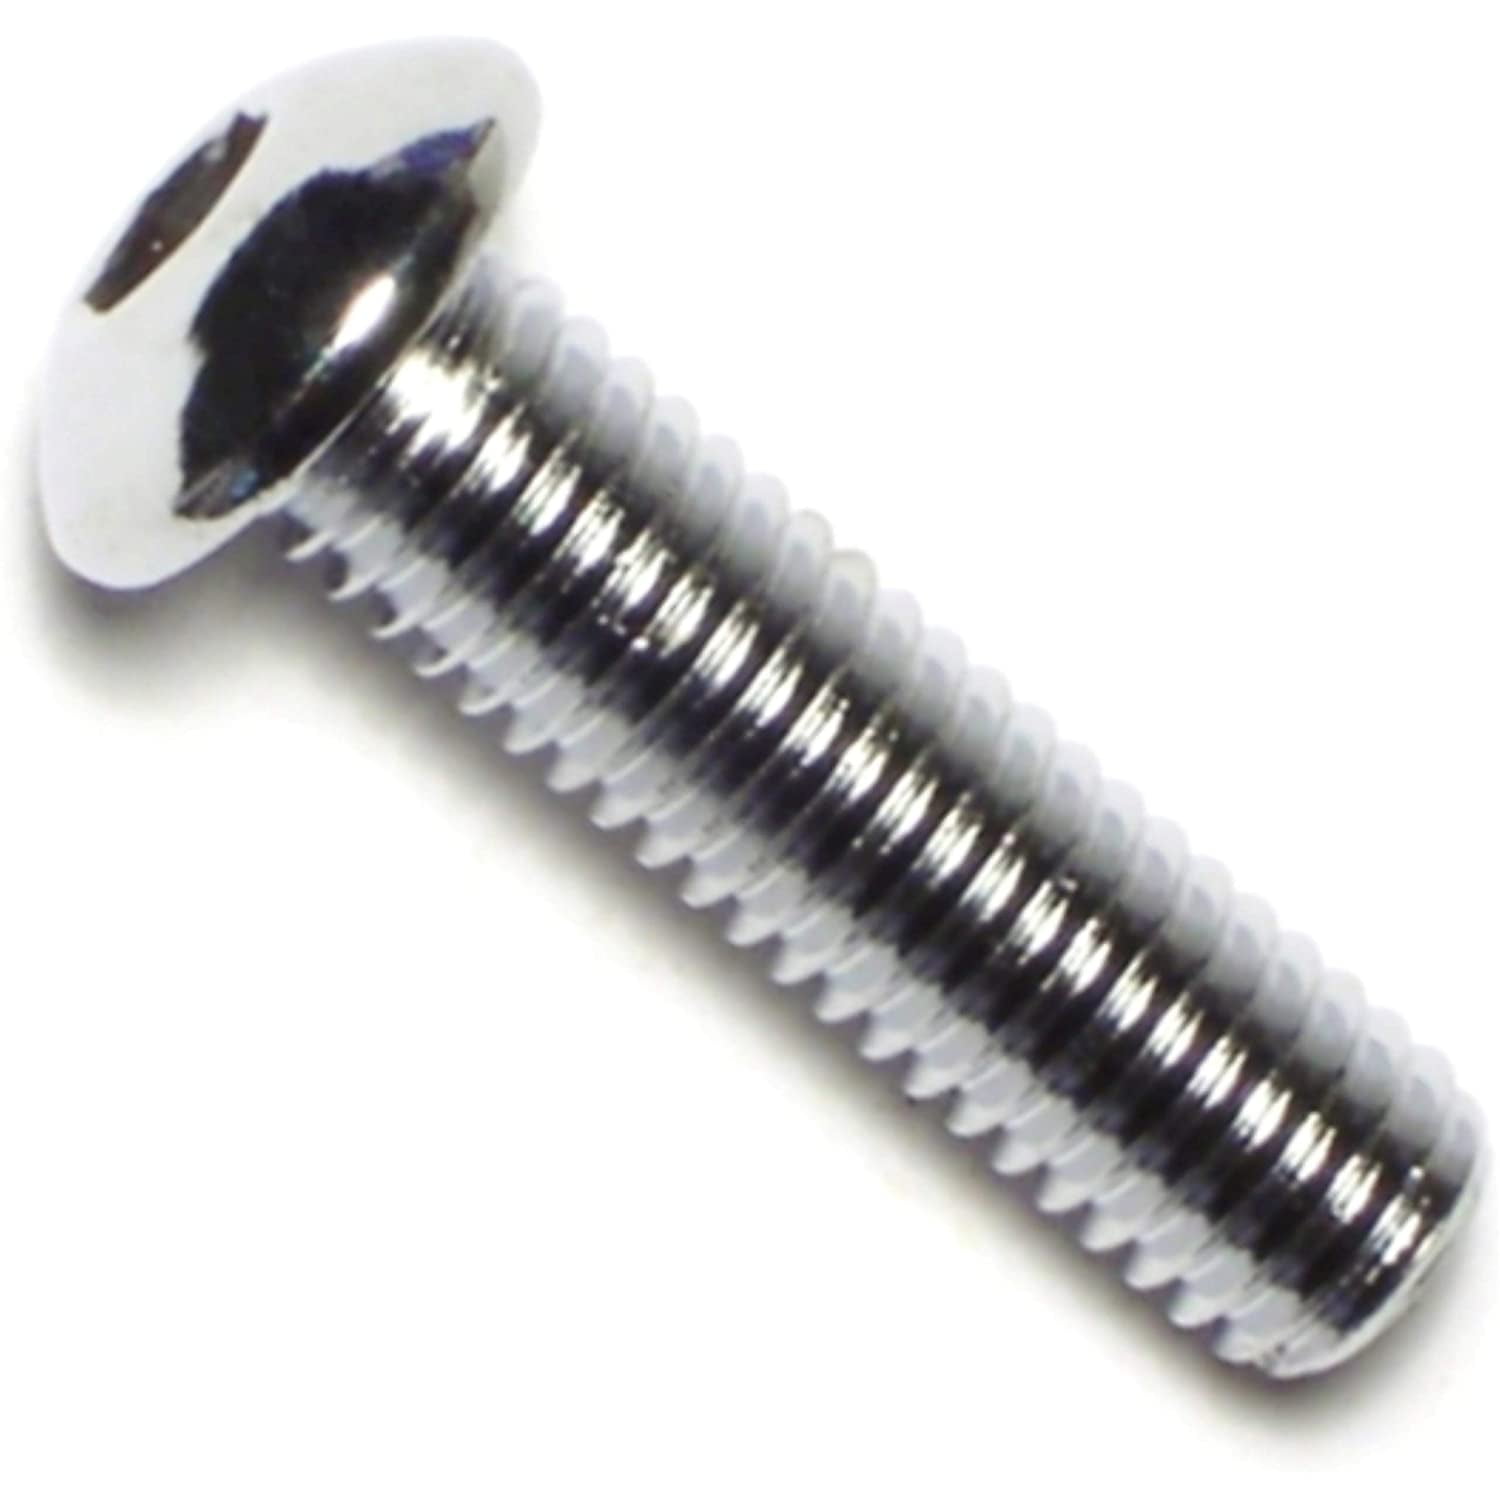 Piece-10 Hard-to-Find Fastener 014973136185 Coarse Metric Button Head Screws 8mm-1.25 x 30mm 